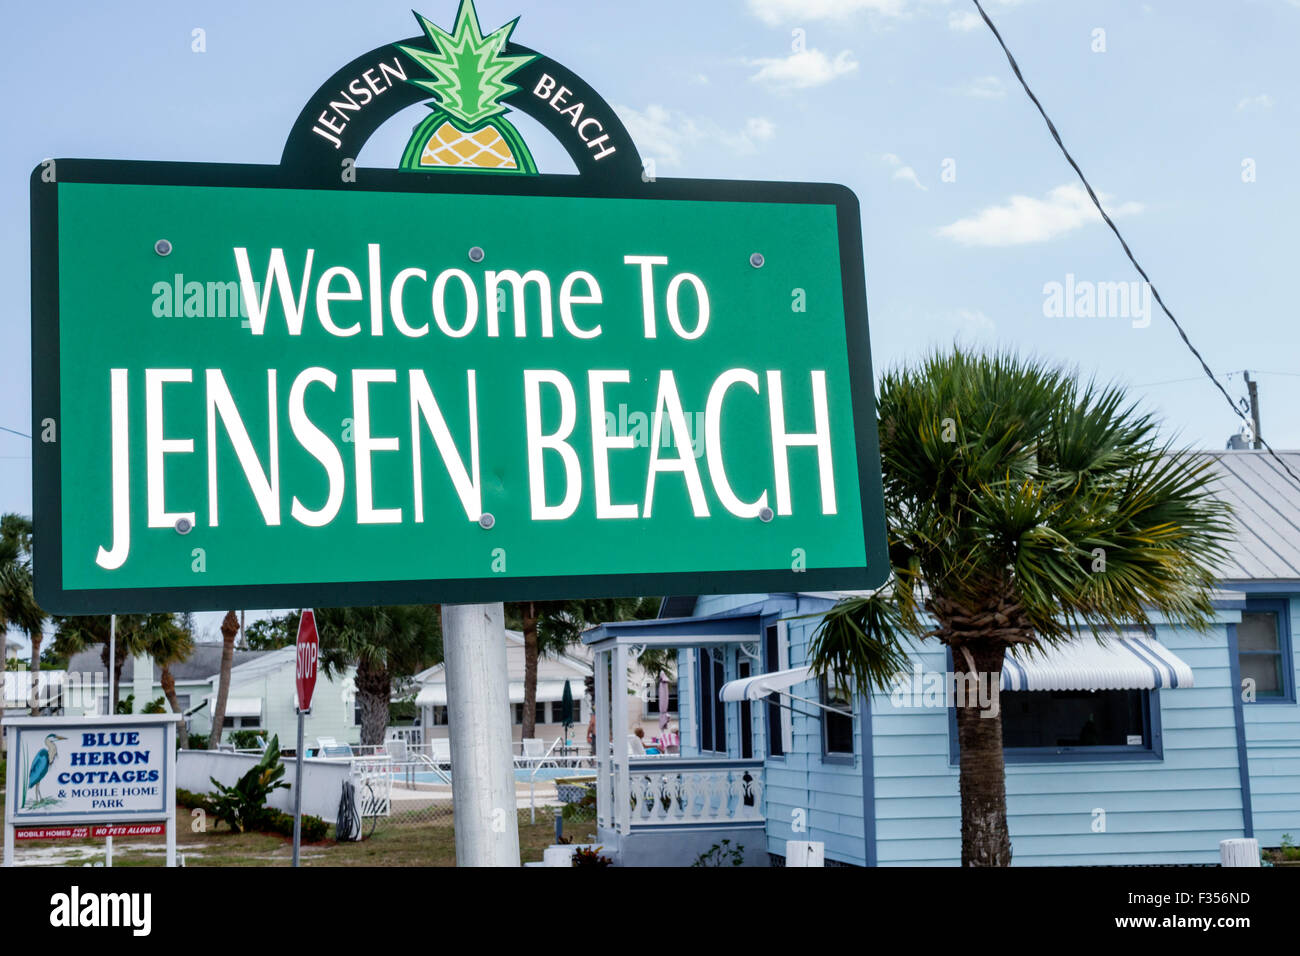 Jensen Beach Florida, panneau de bienvenue, mobile home Park, les visiteurs voyage voyage touristique touristique site touristique monuments culture culturelle, groupe de vacances p Banque D'Images